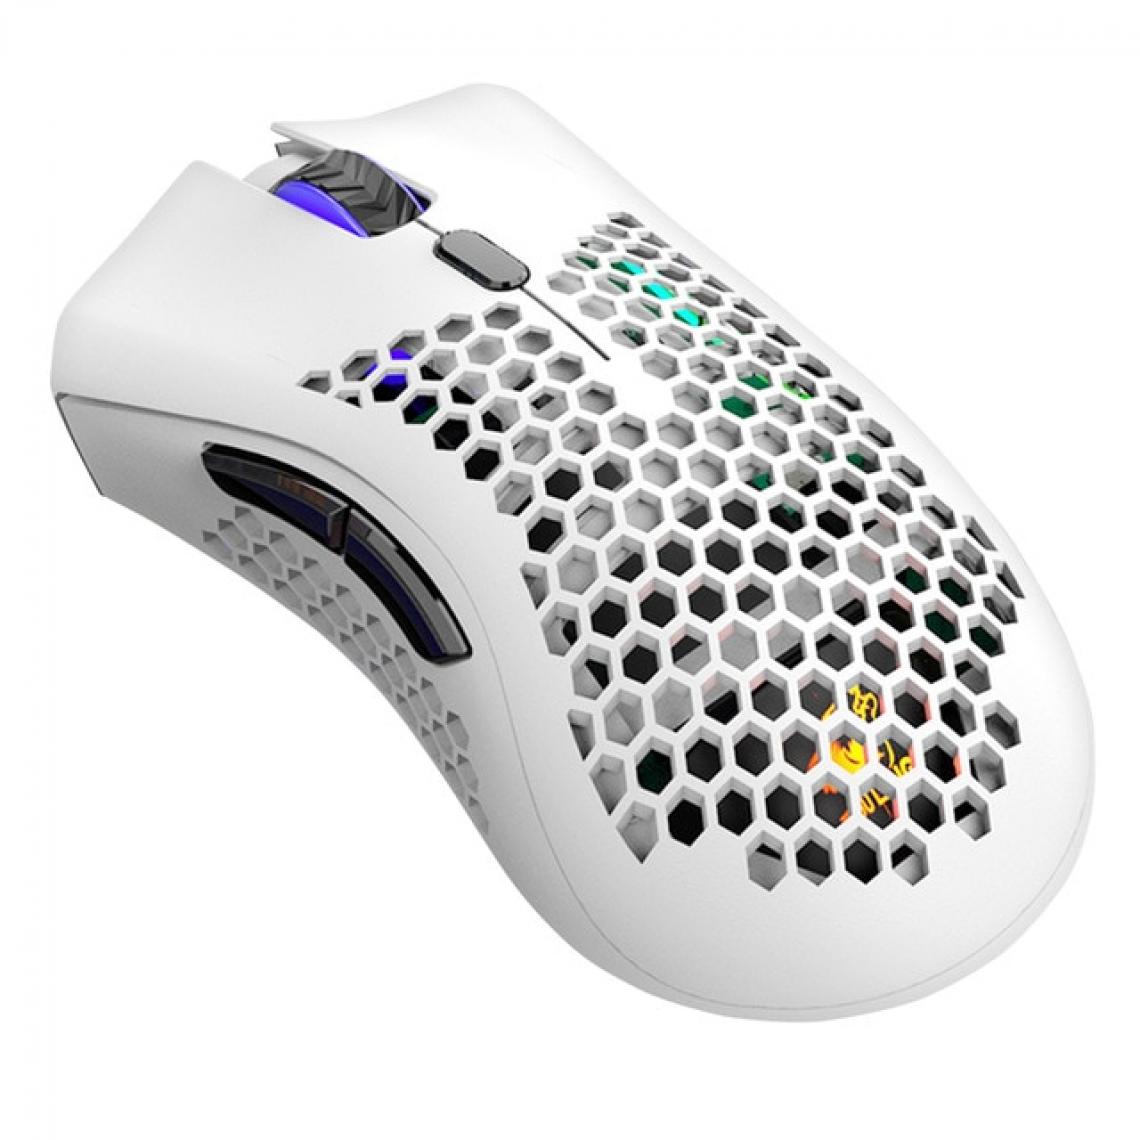 Universal - Souris gaming 2400 dpi coque cellulaire 2,4 GHz sans fil souris ergonomique rechargeable RVB trou lumineux souris gaming PC | Mouse (blanc) - Souris